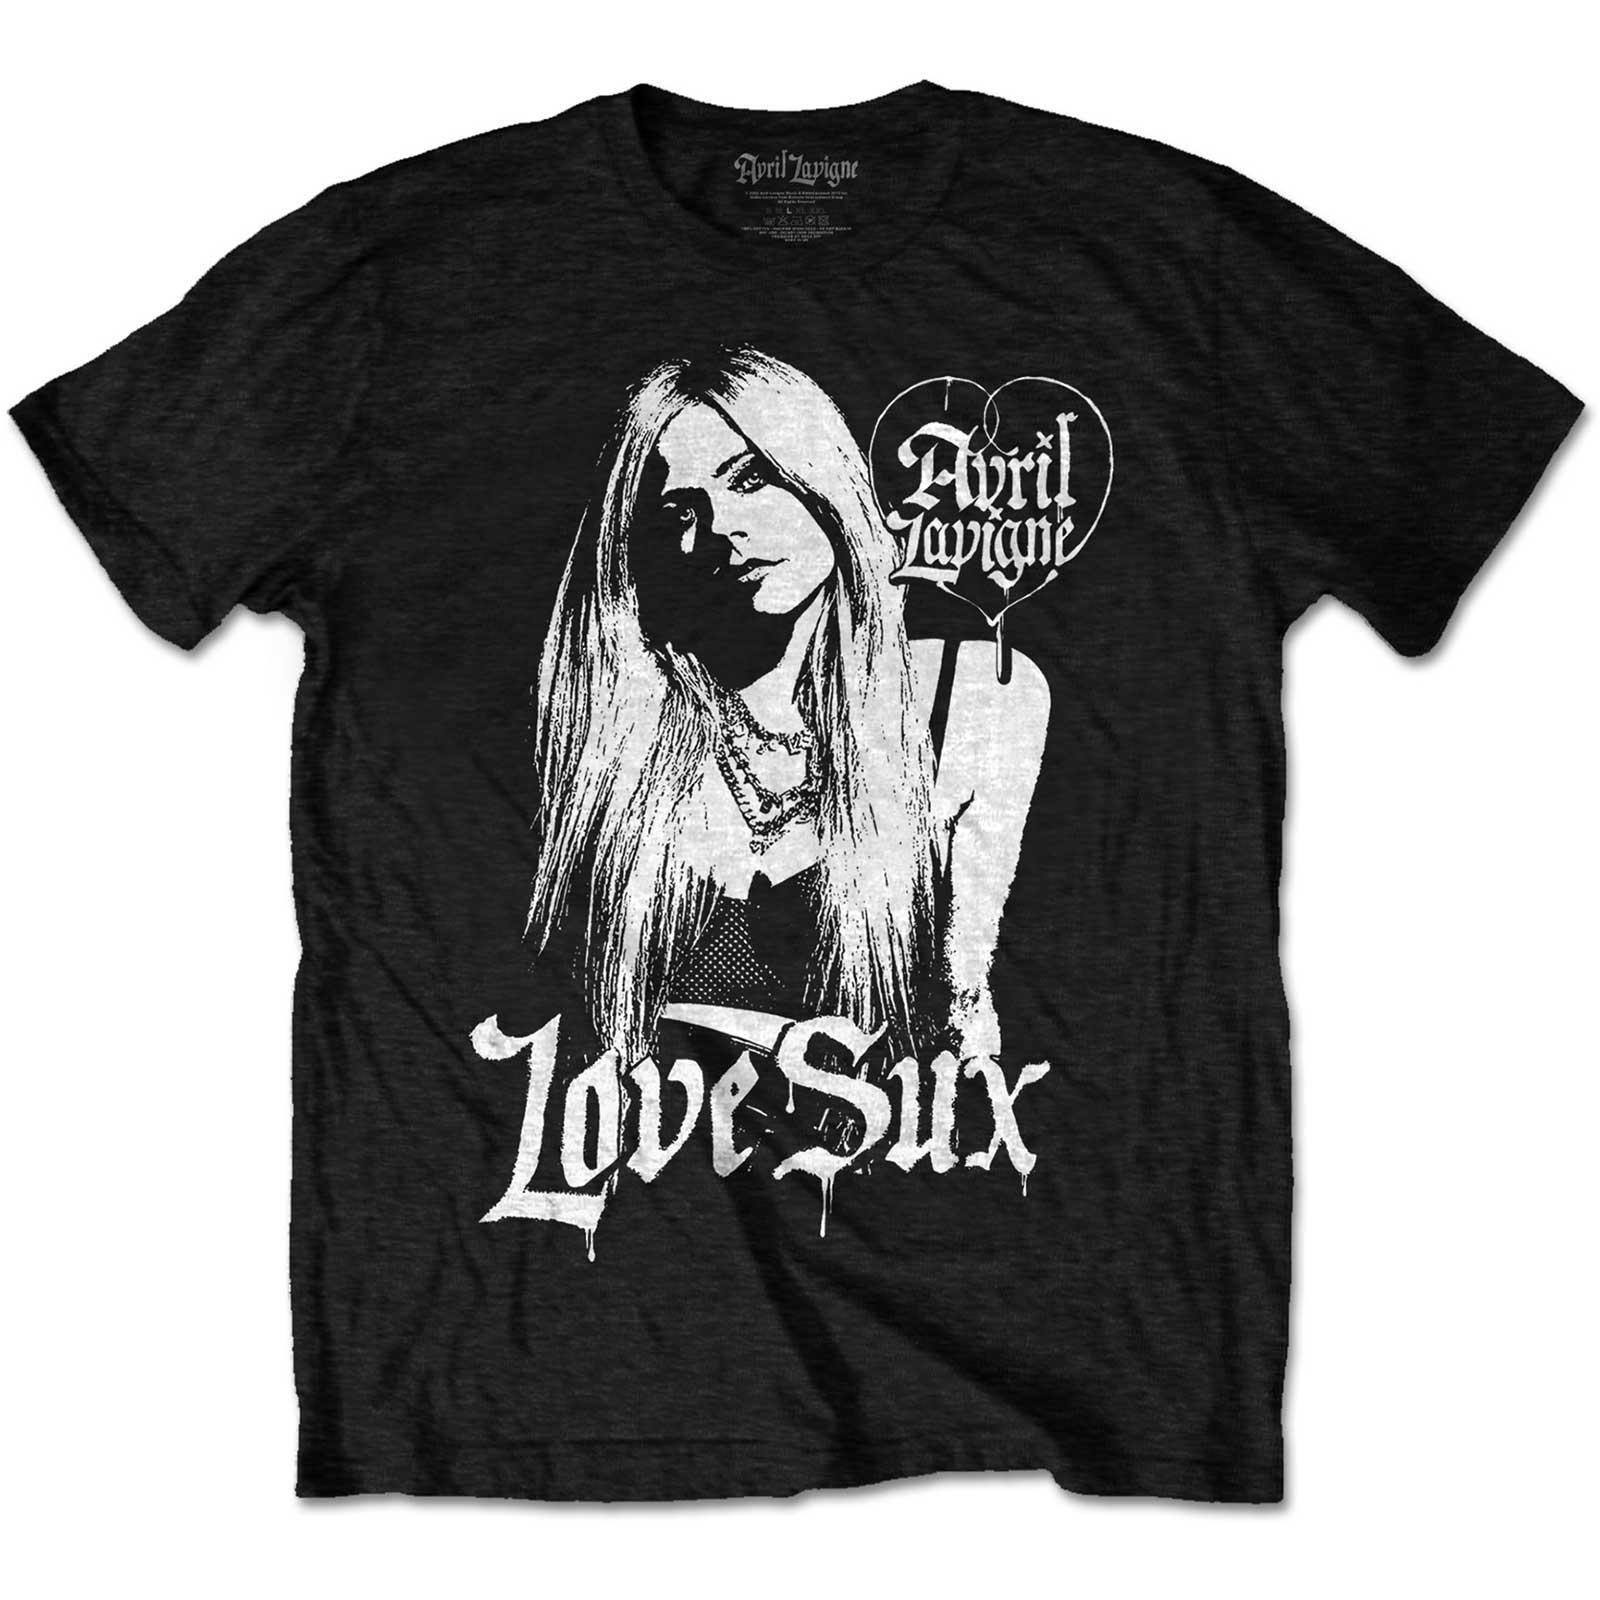 Avril Lavigne Unisex Adult Love Sux Cotton T-Shirt (Black) (S)